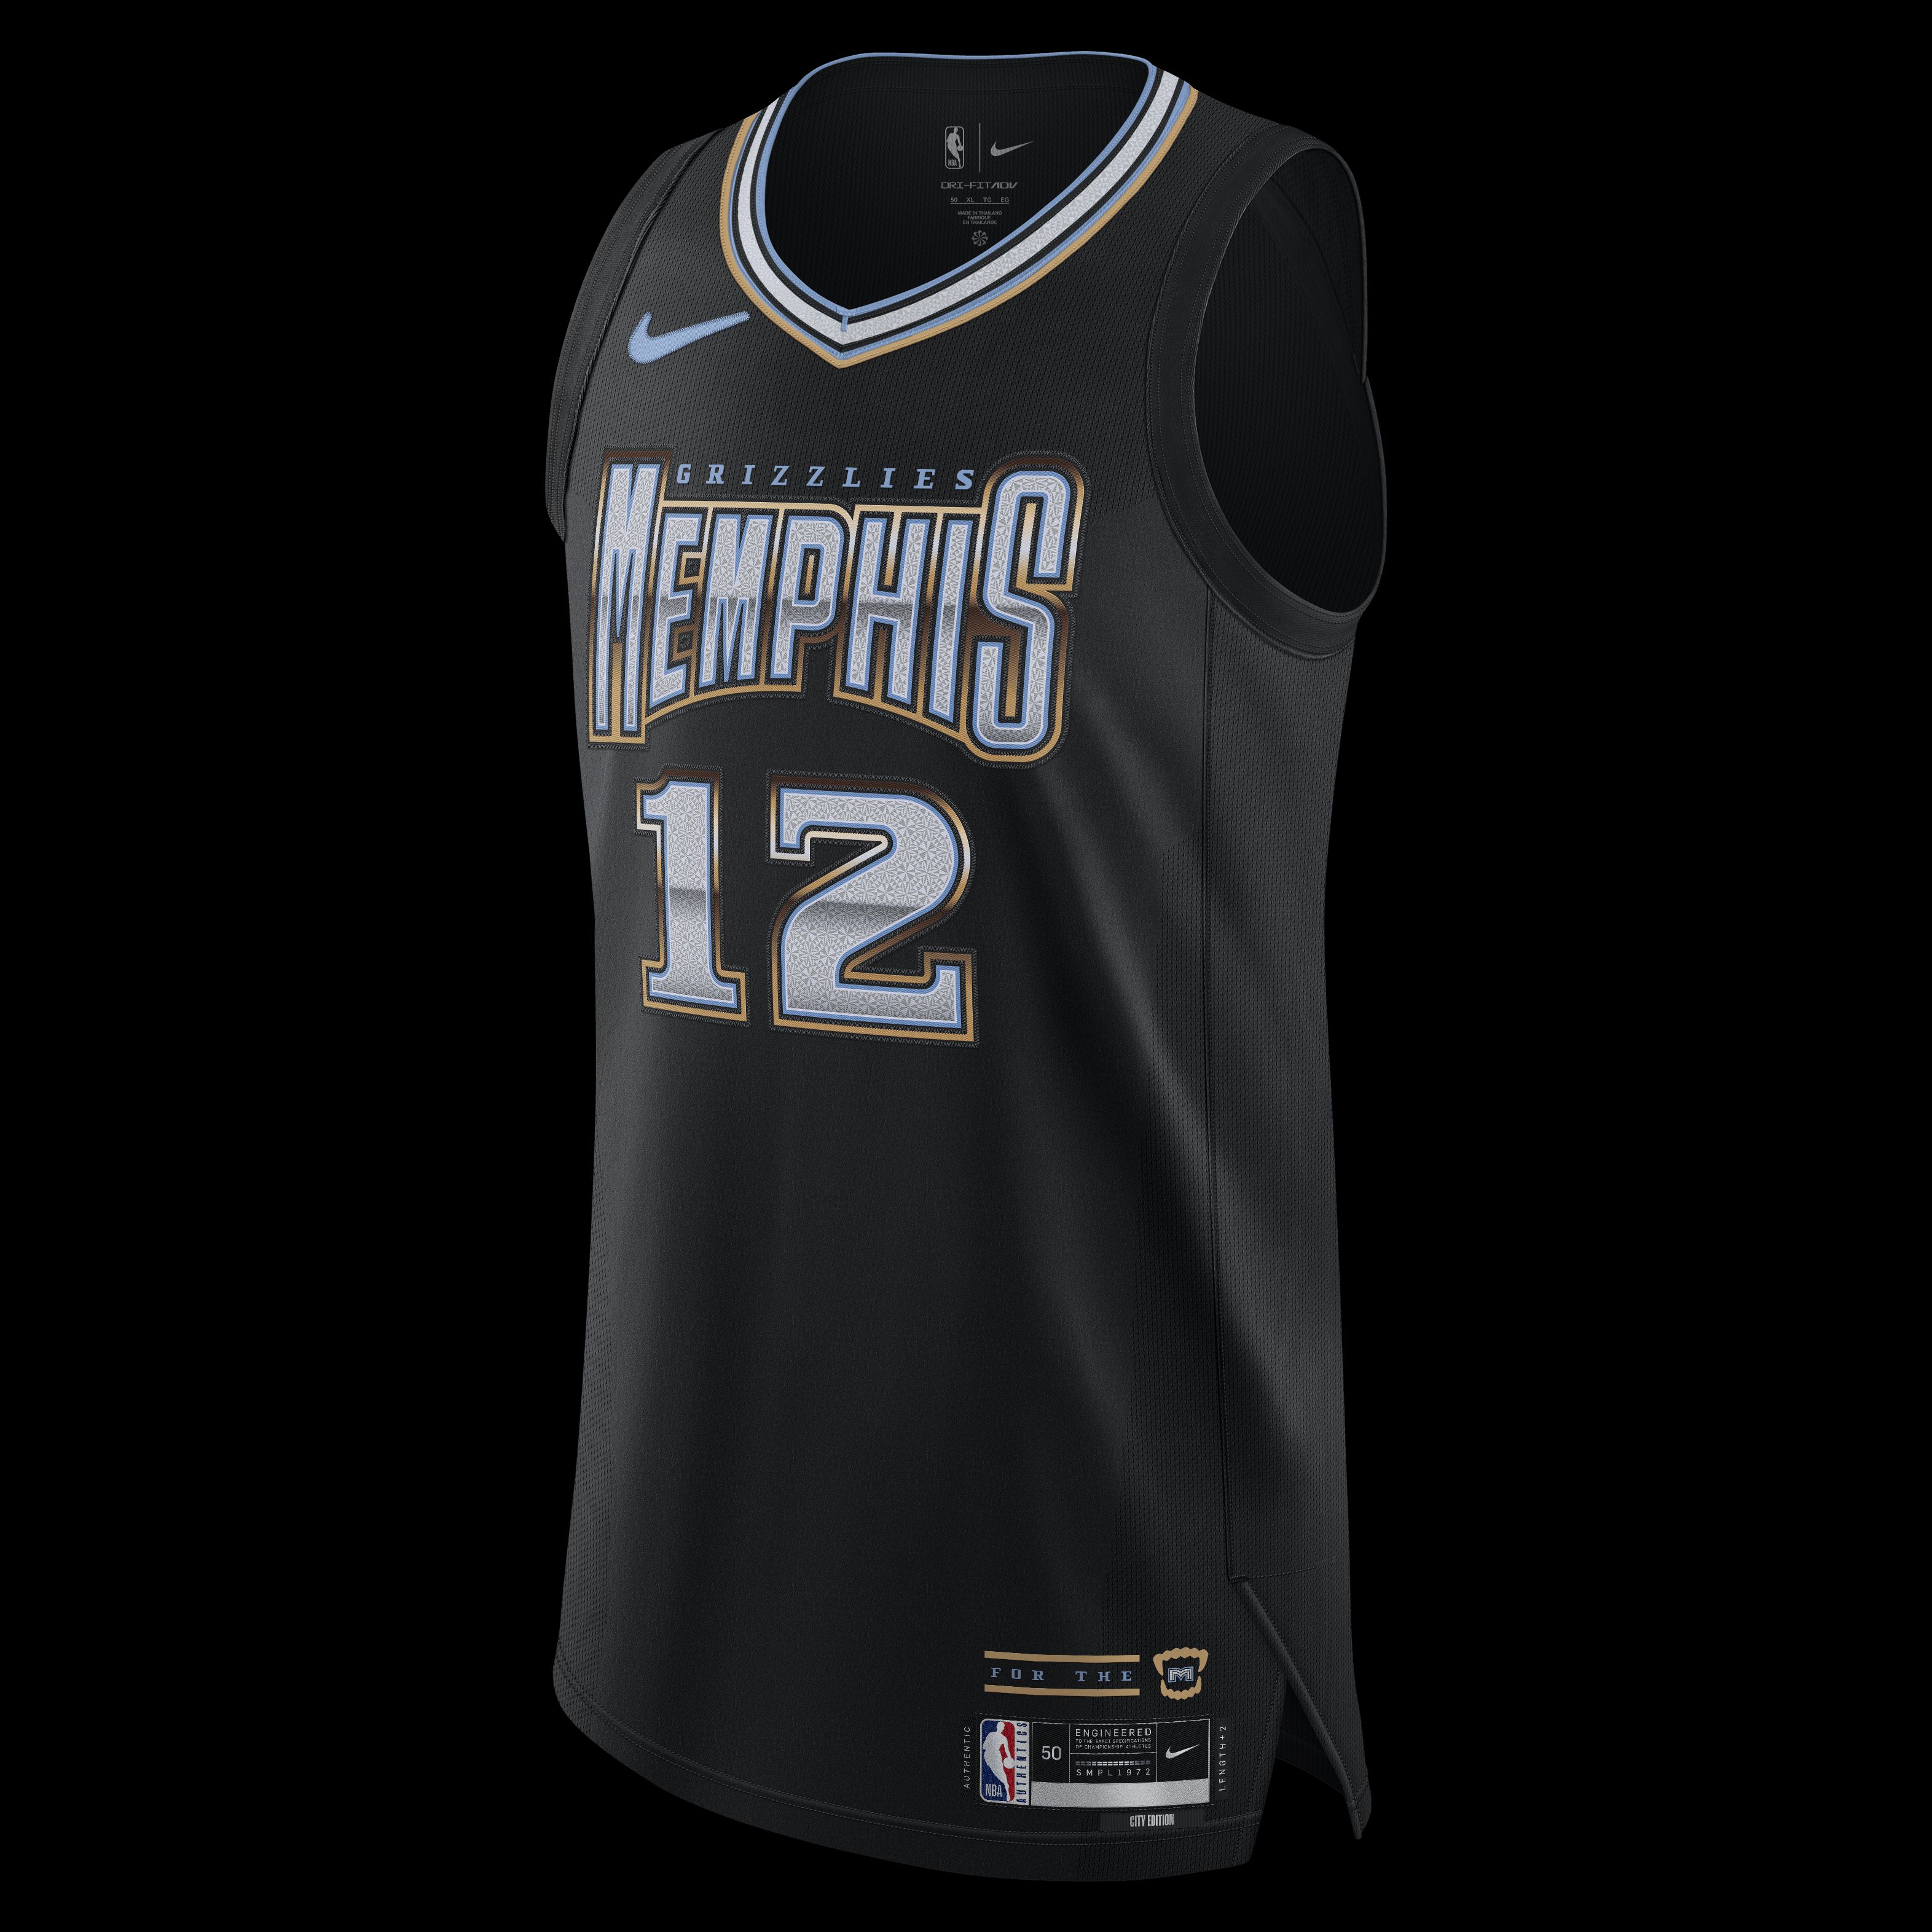 Memphis Grizzlies Jerseys, Grizzlies City Jerseys, Basketball Uniforms